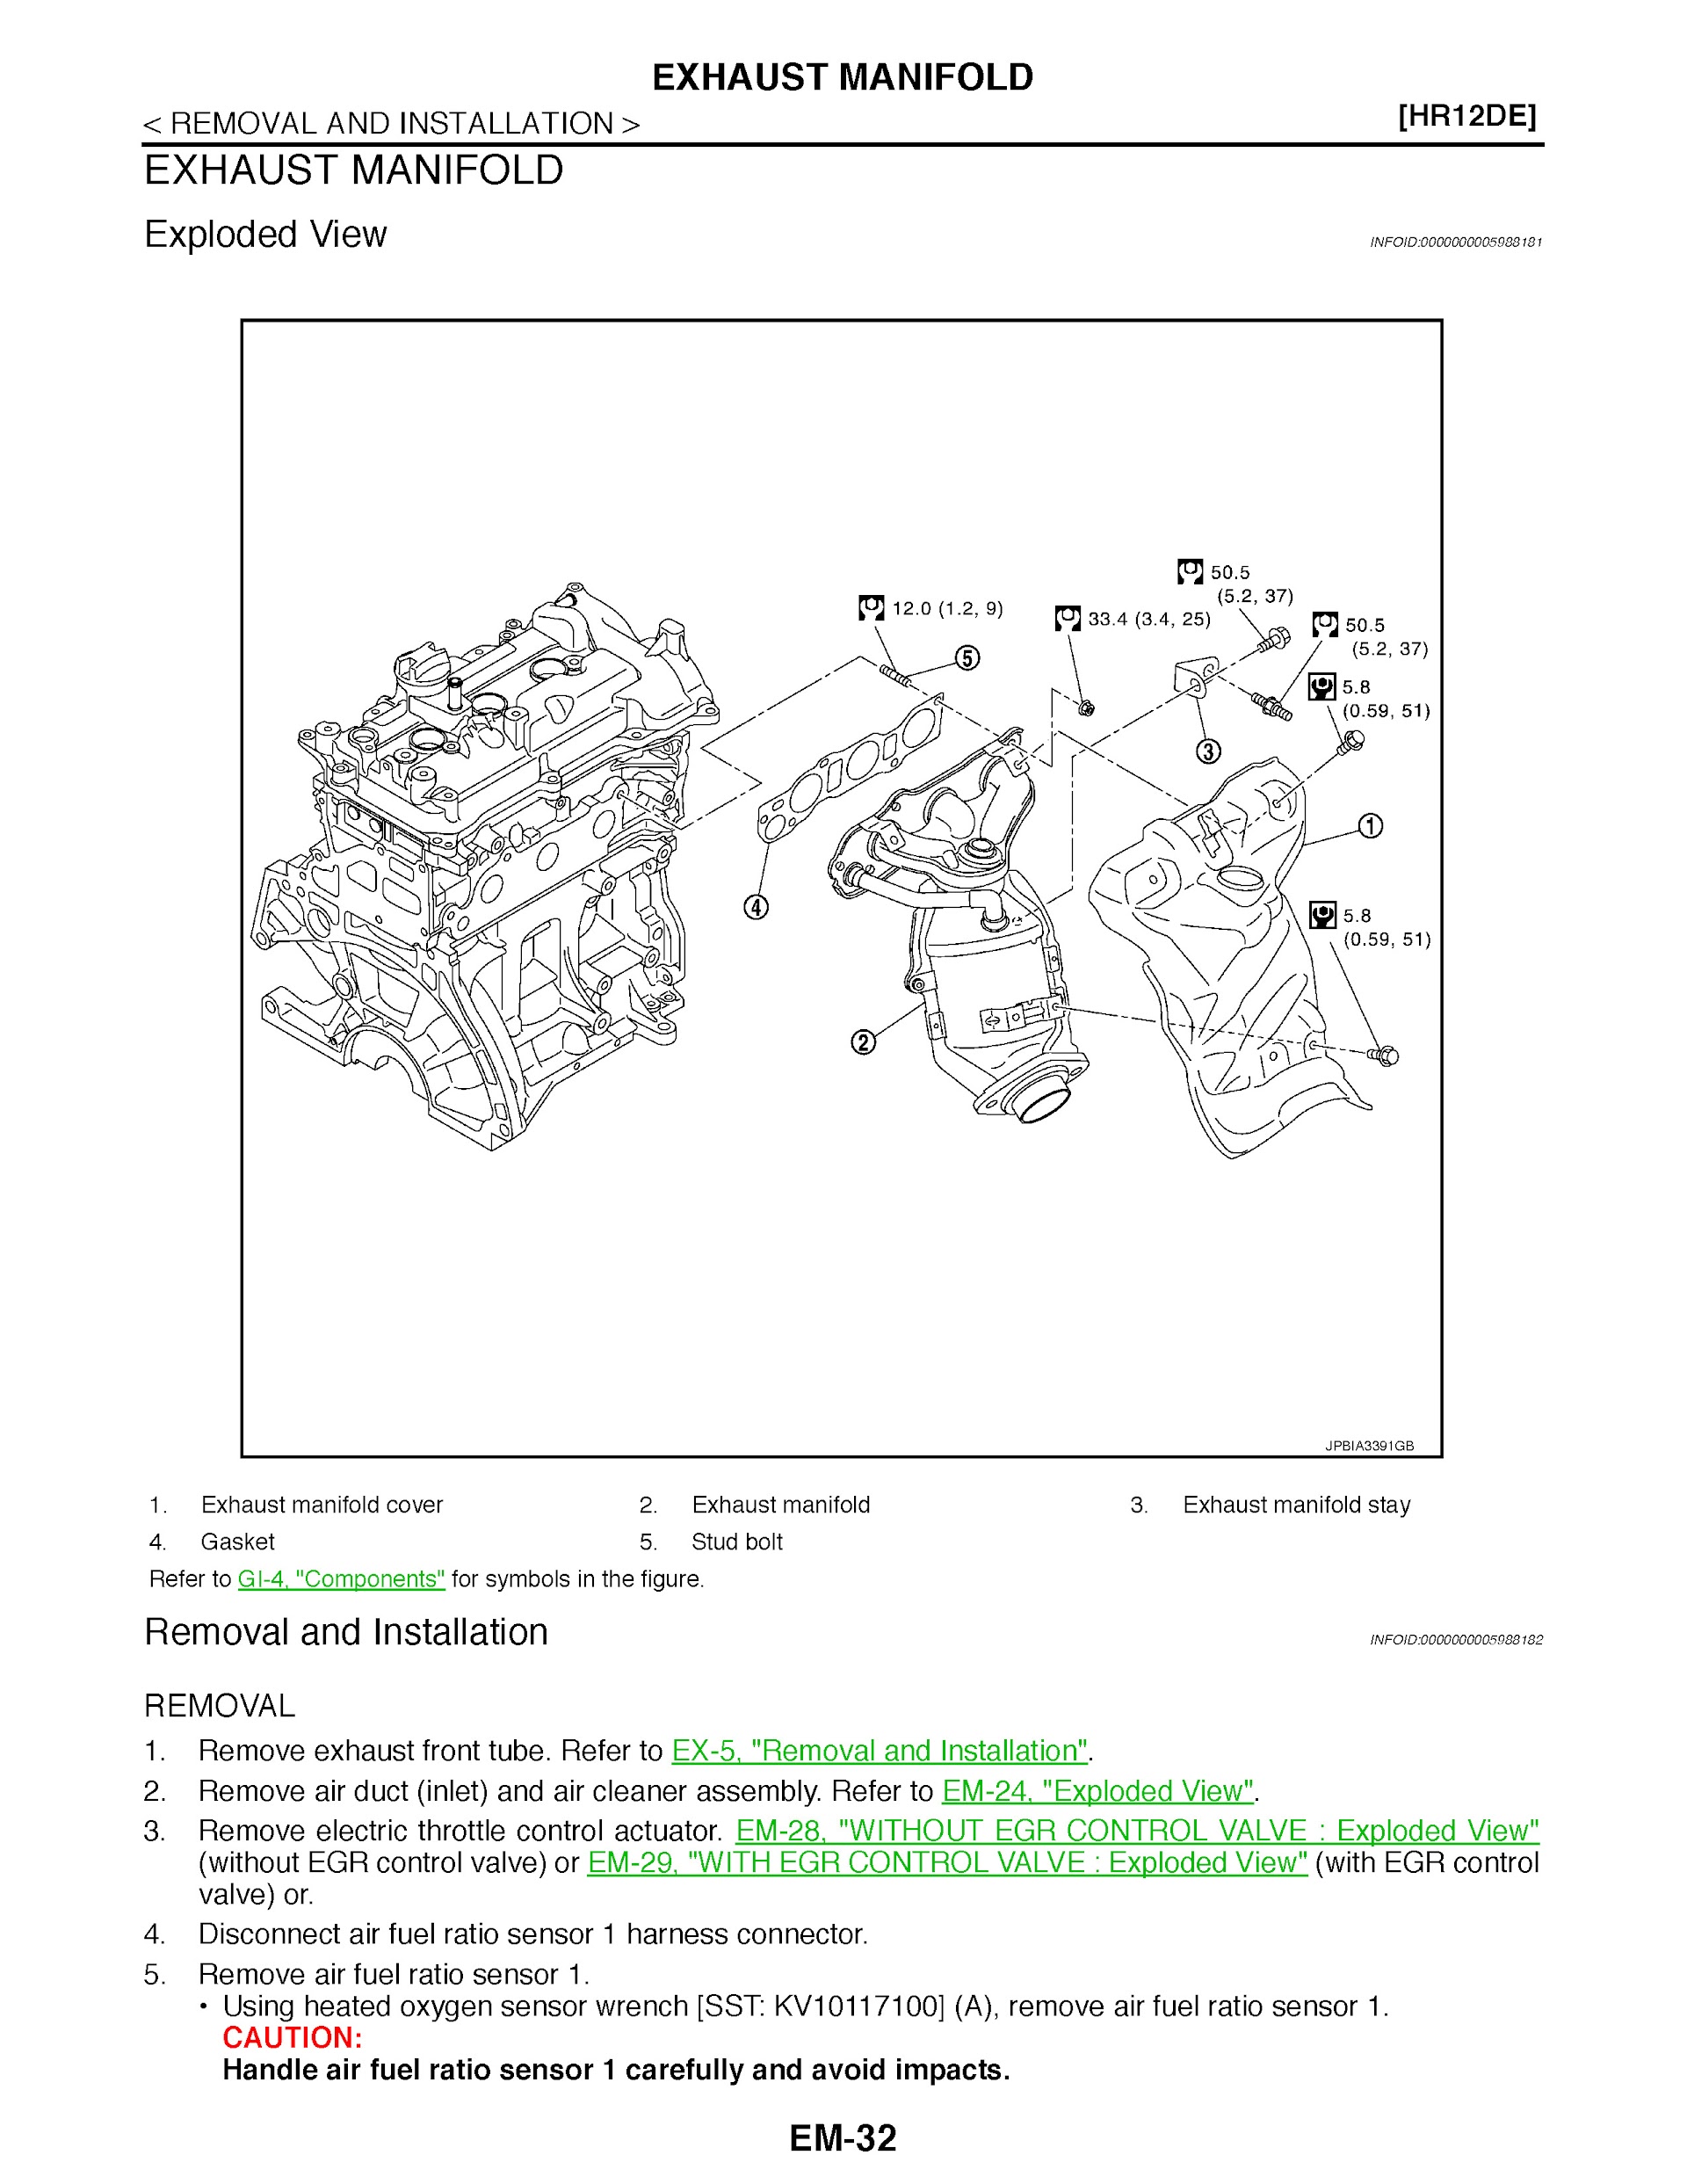 2014 Nissan Micra Repair Manual